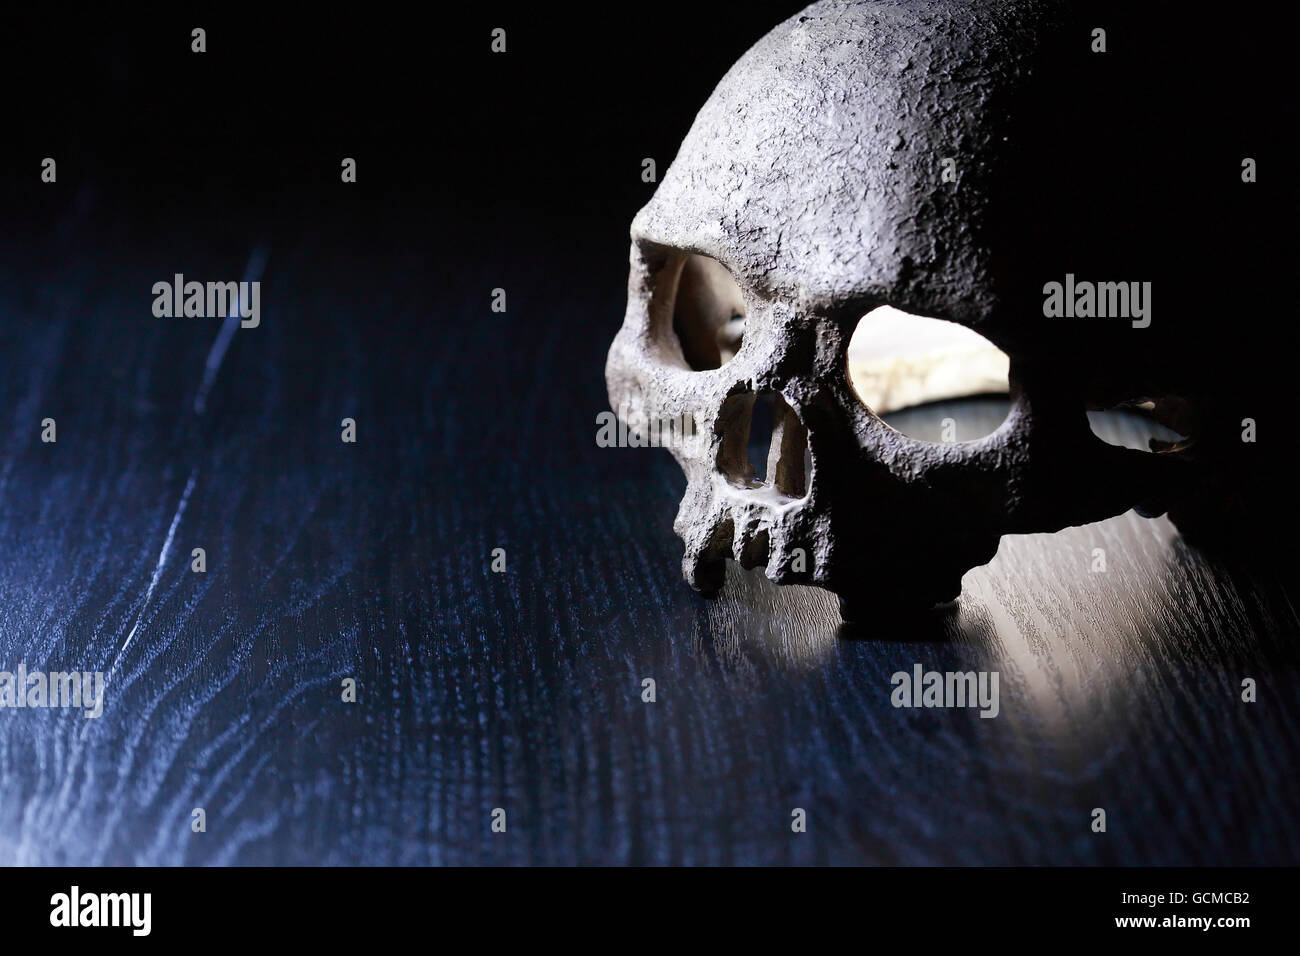 Concept de la mort. Un crâne humain sur fond sombre avec de l'espace libre pour le texte Banque D'Images